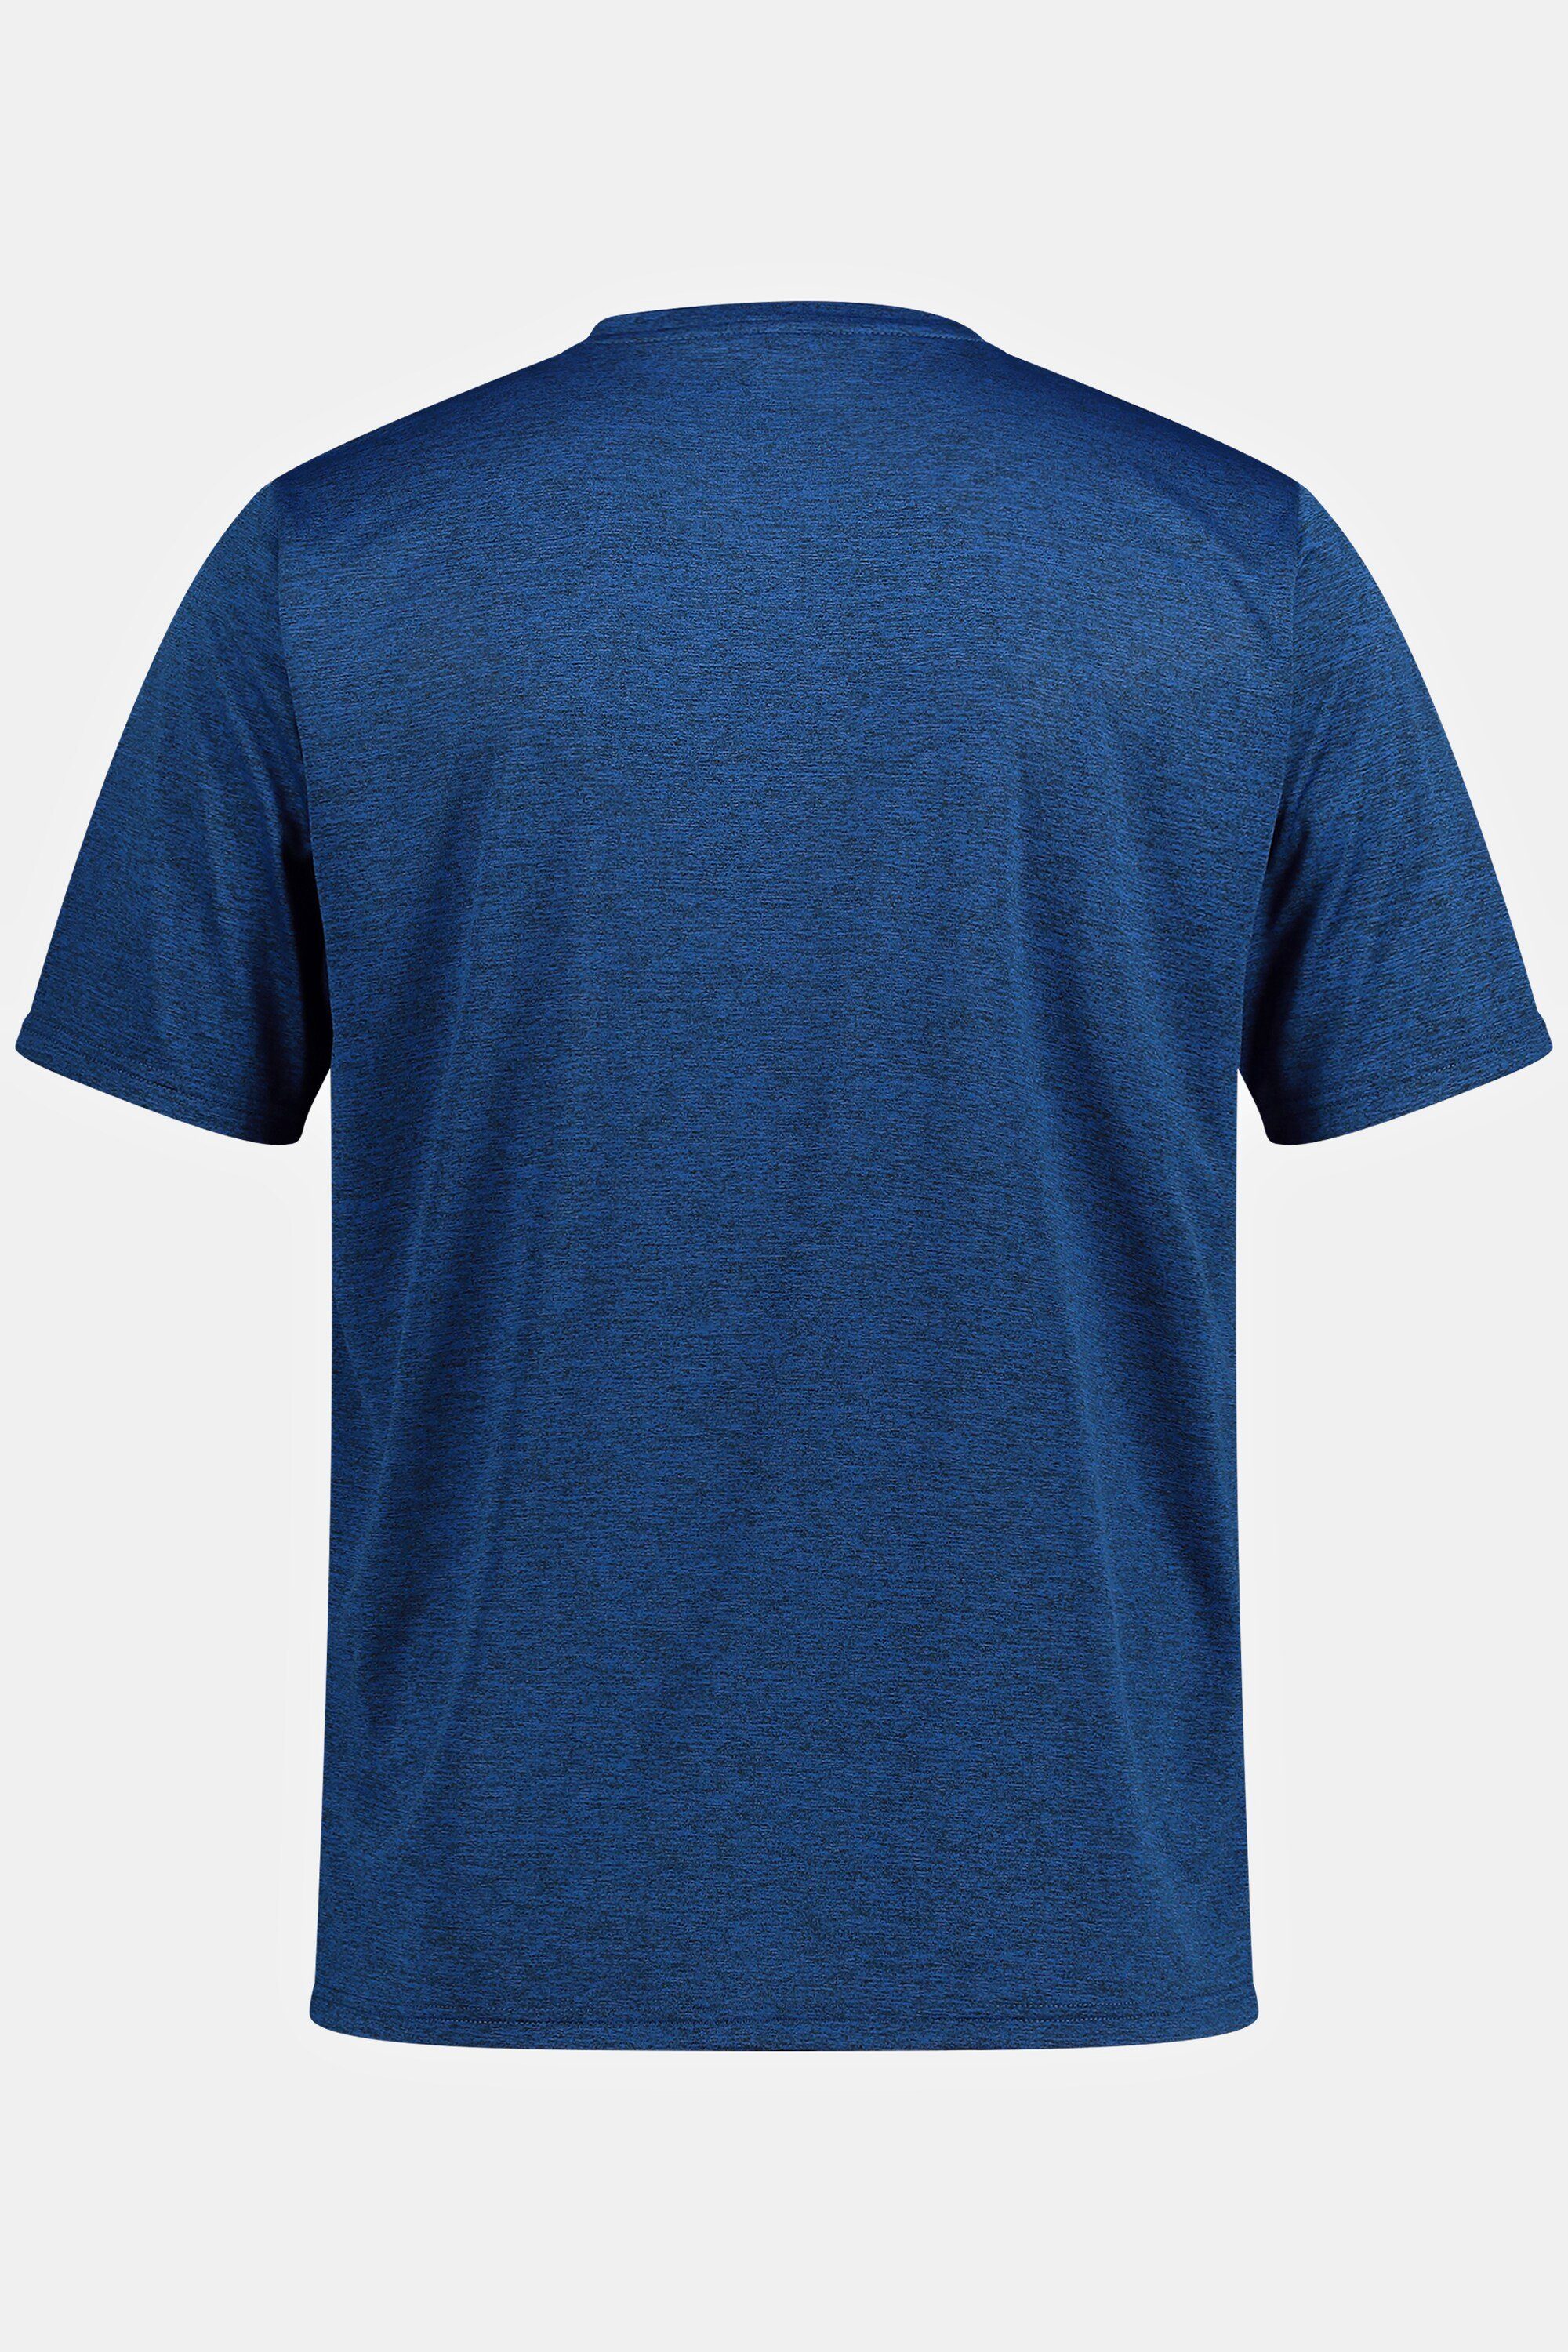 blau FLEXNAMIC® QuickDry JP1880 Halbarm T-Shirt Funktions-Shirt